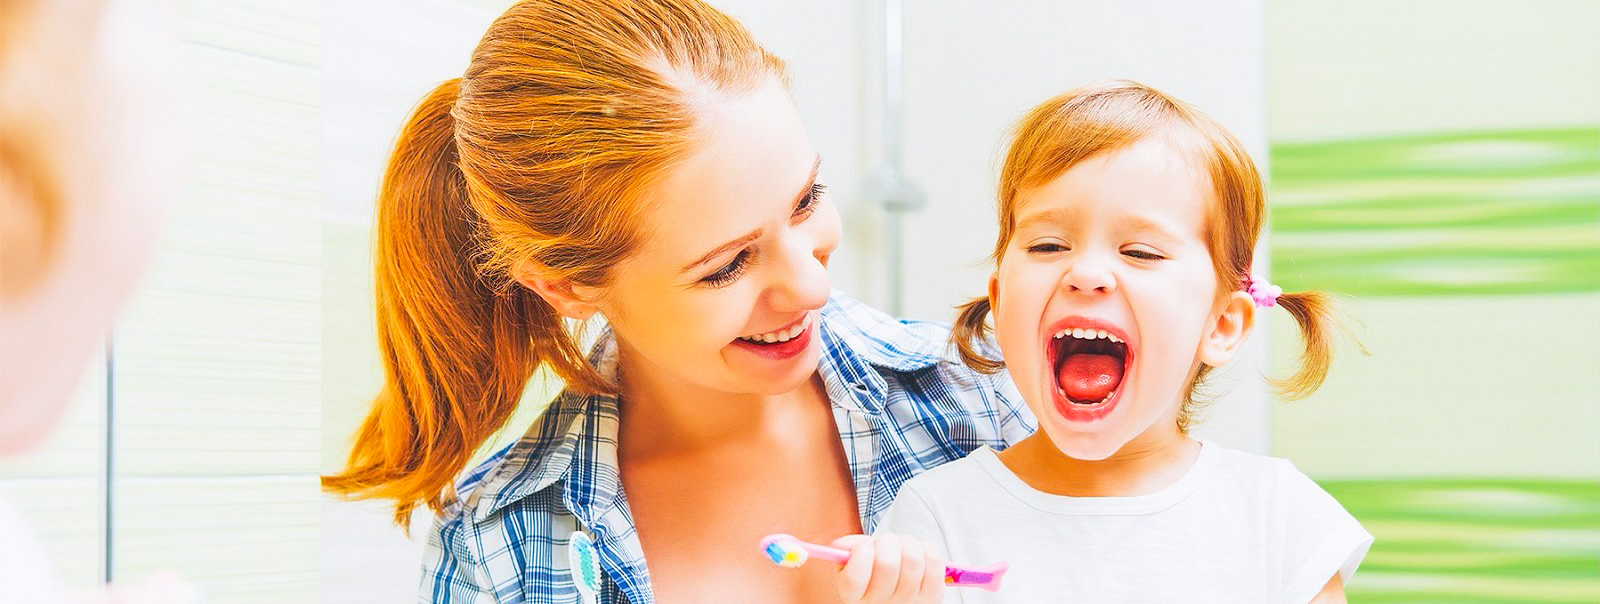 Iite S1 - розумна зубна щітка навчить дітей чистити зуби правильно